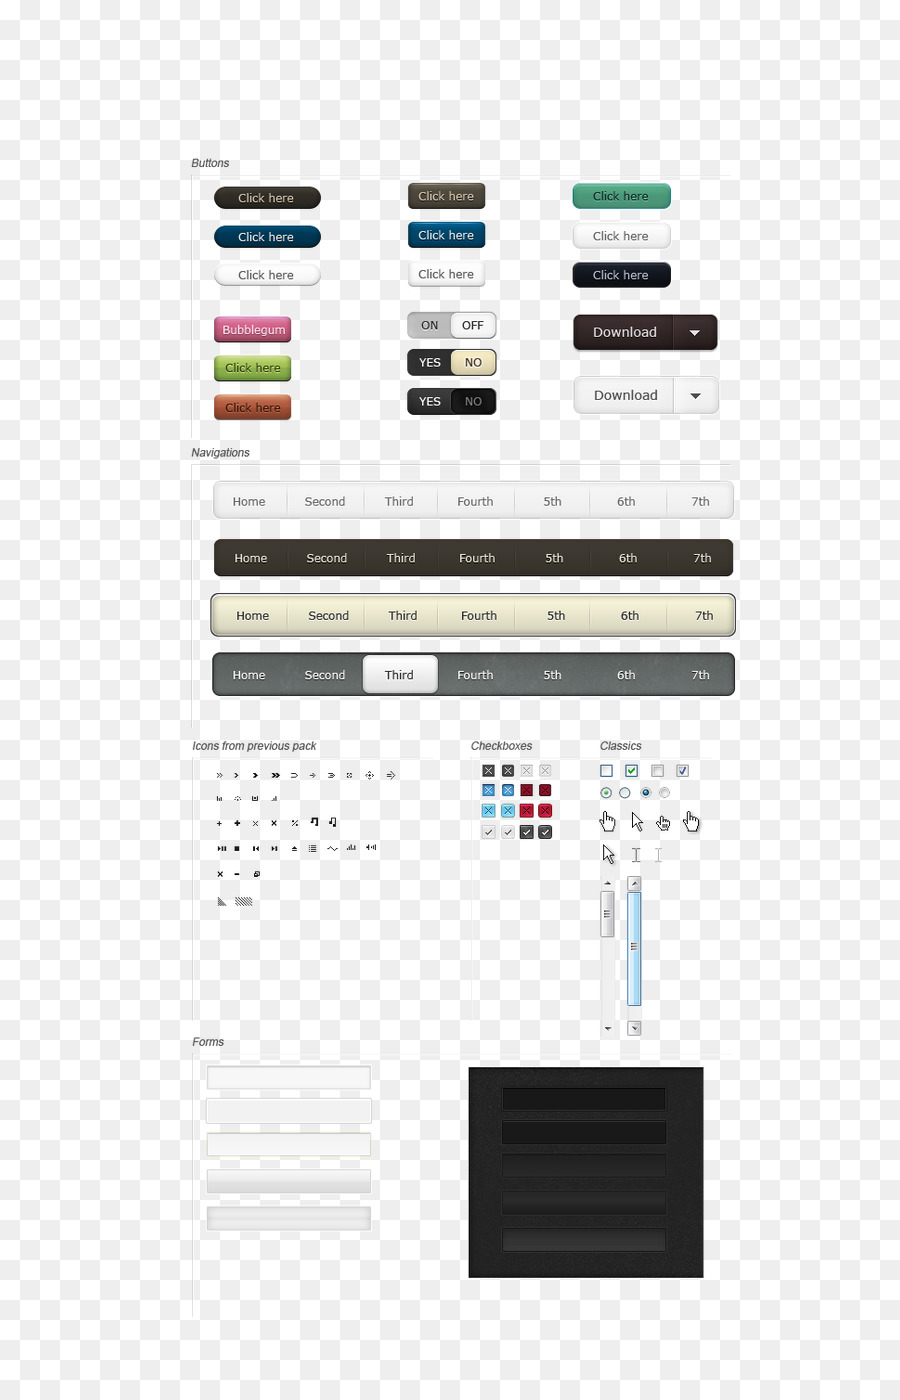 Il design dell'interfaccia utente Widget - Interfaccia utente Web design del pulsante